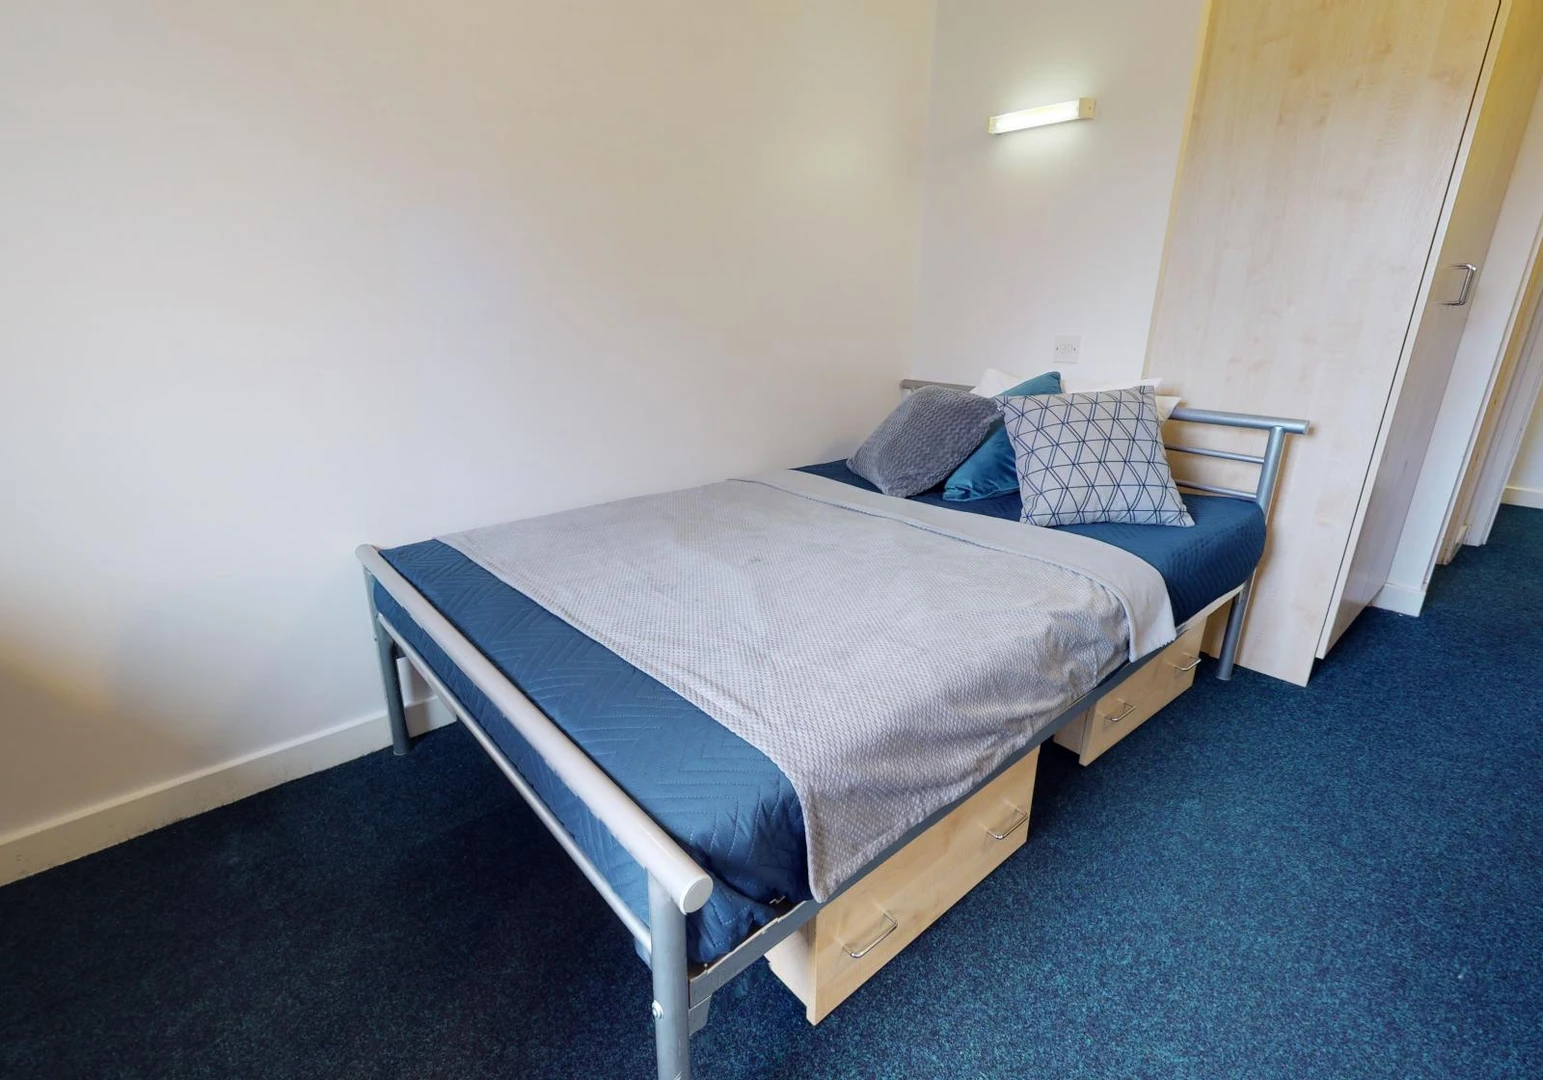 Pokój do wynajęcia z podwójnym łóżkiem w Huddersfield